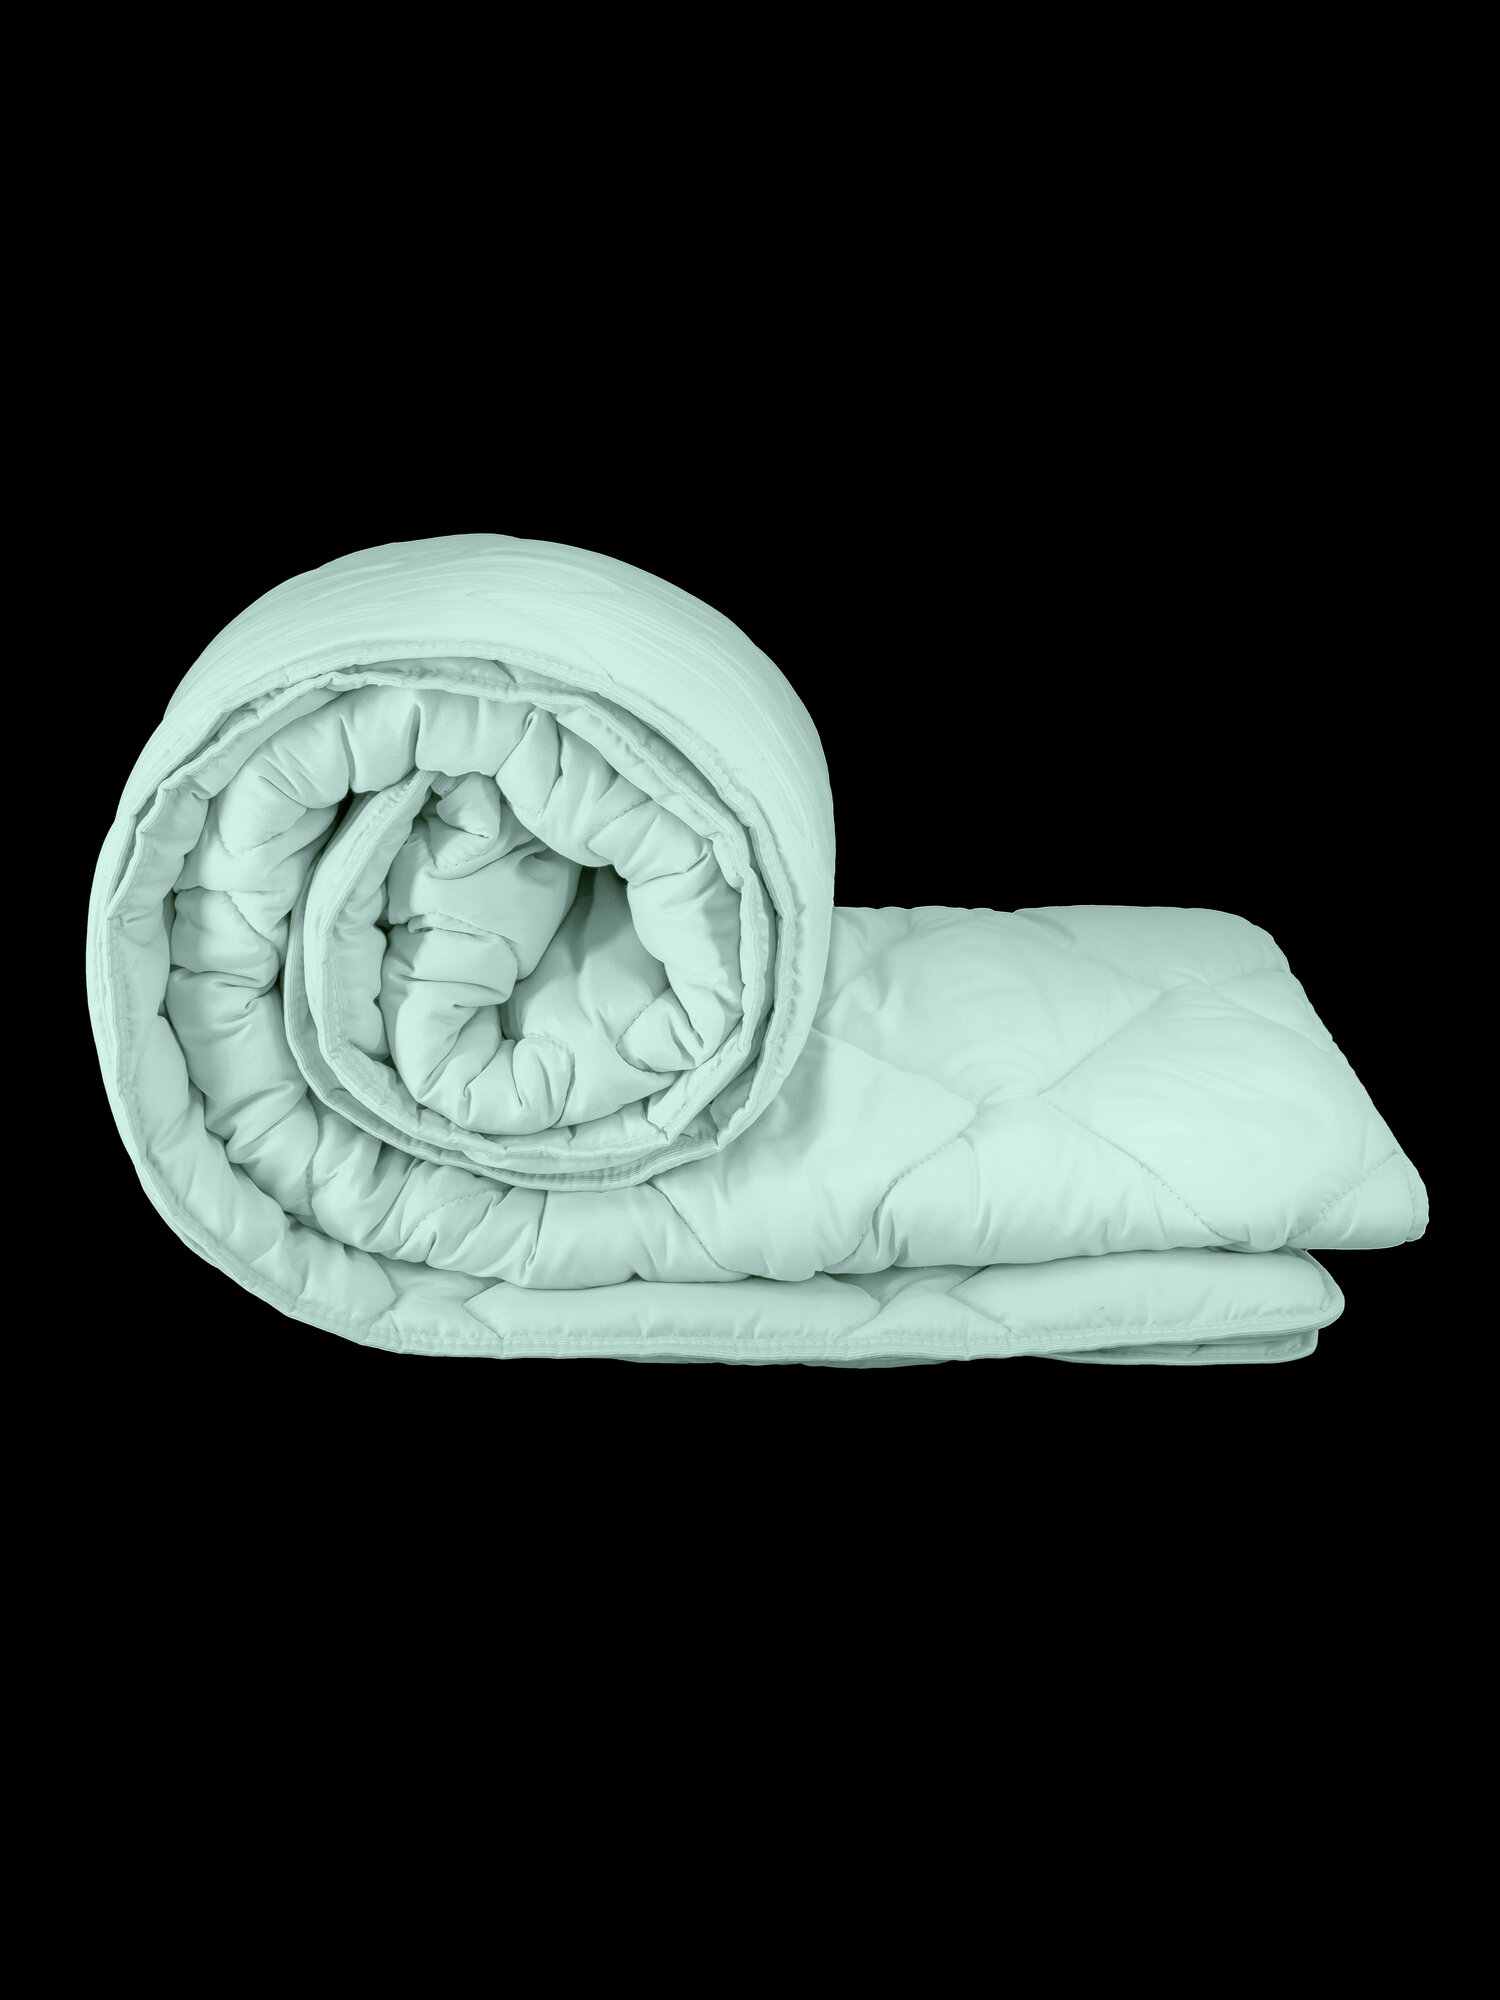 Одеяло Непроспи "Эвкалипт" Евро 200х220 см / Всесезонное, теплое, стеганое одеяло из эвкалиптового волокна